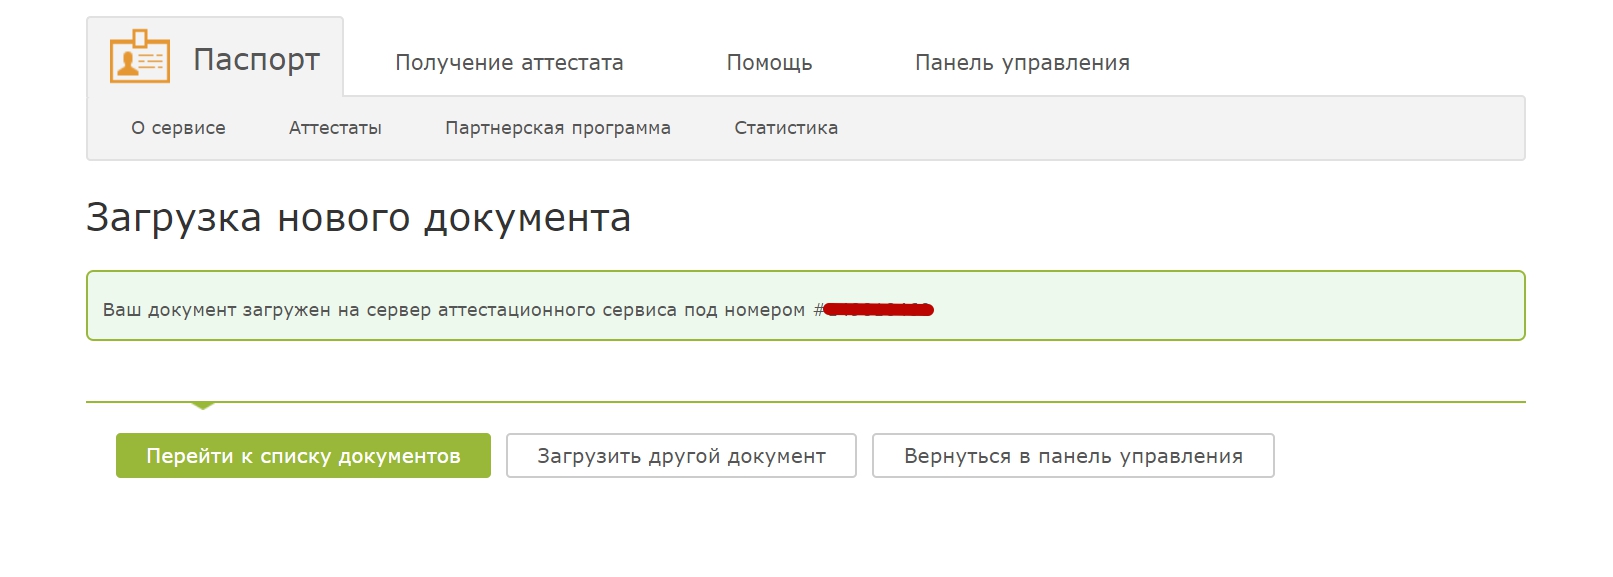 Привязать карту к вебмани украина чейндж ордер